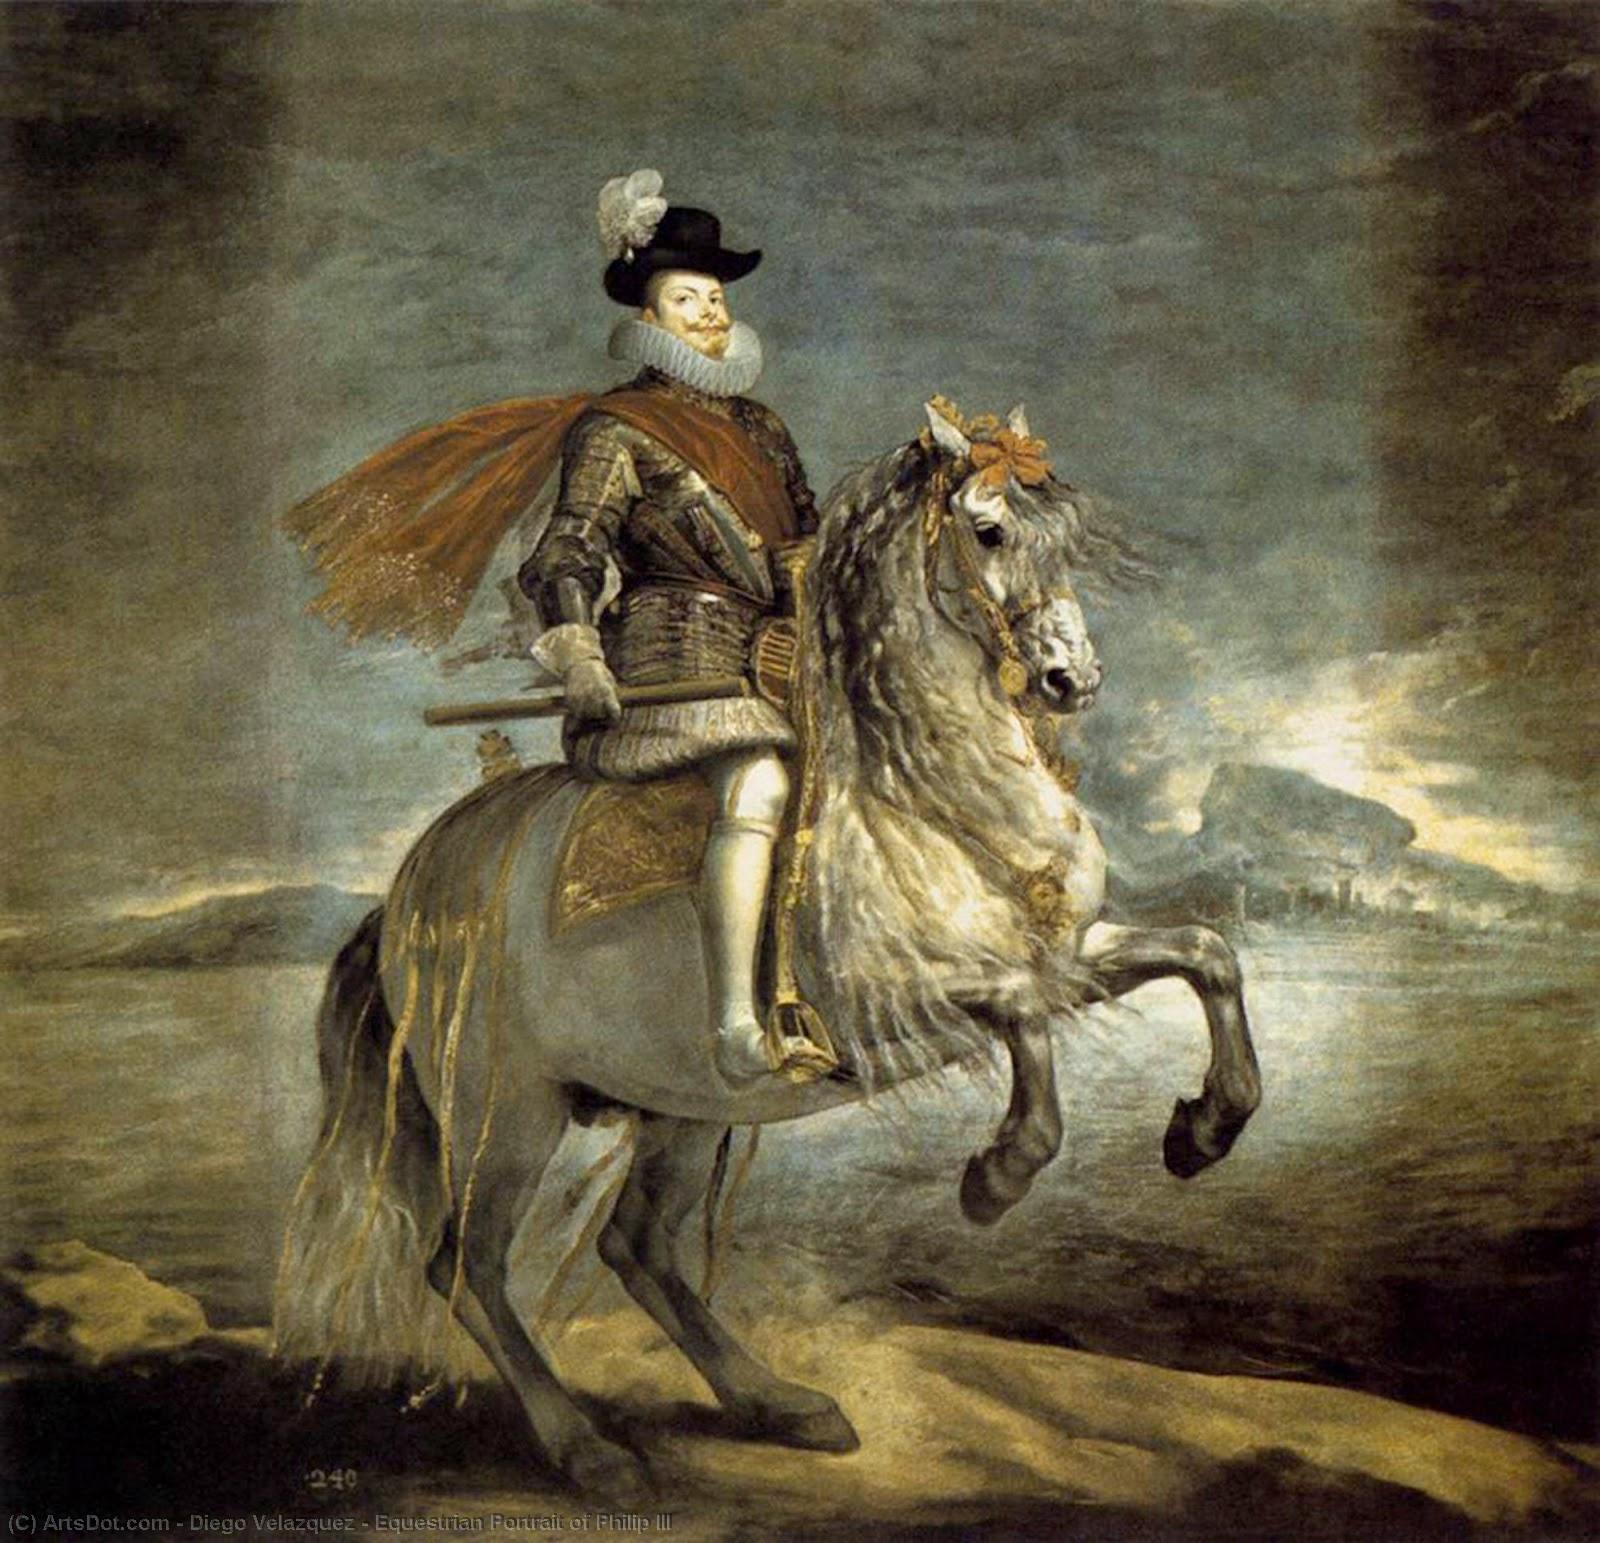 WikiOO.org - Εγκυκλοπαίδεια Καλών Τεχνών - Ζωγραφική, έργα τέχνης Diego Velazquez - Equestrian Portrait of Philip III